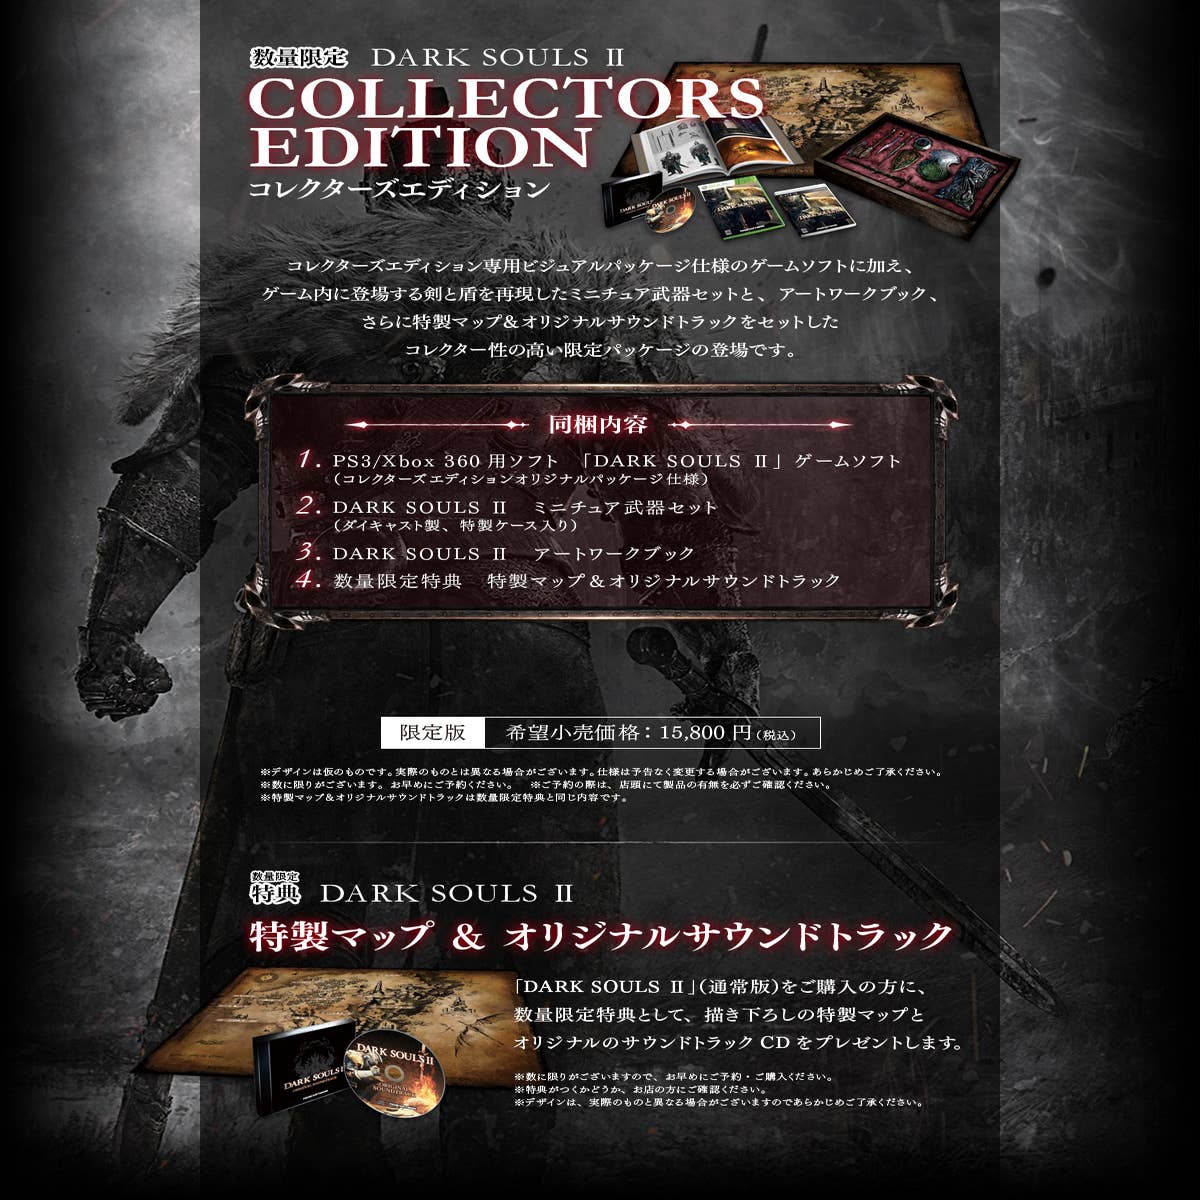 Dark Souls II: Scholar of the First Sin AR XBOX One CD Key